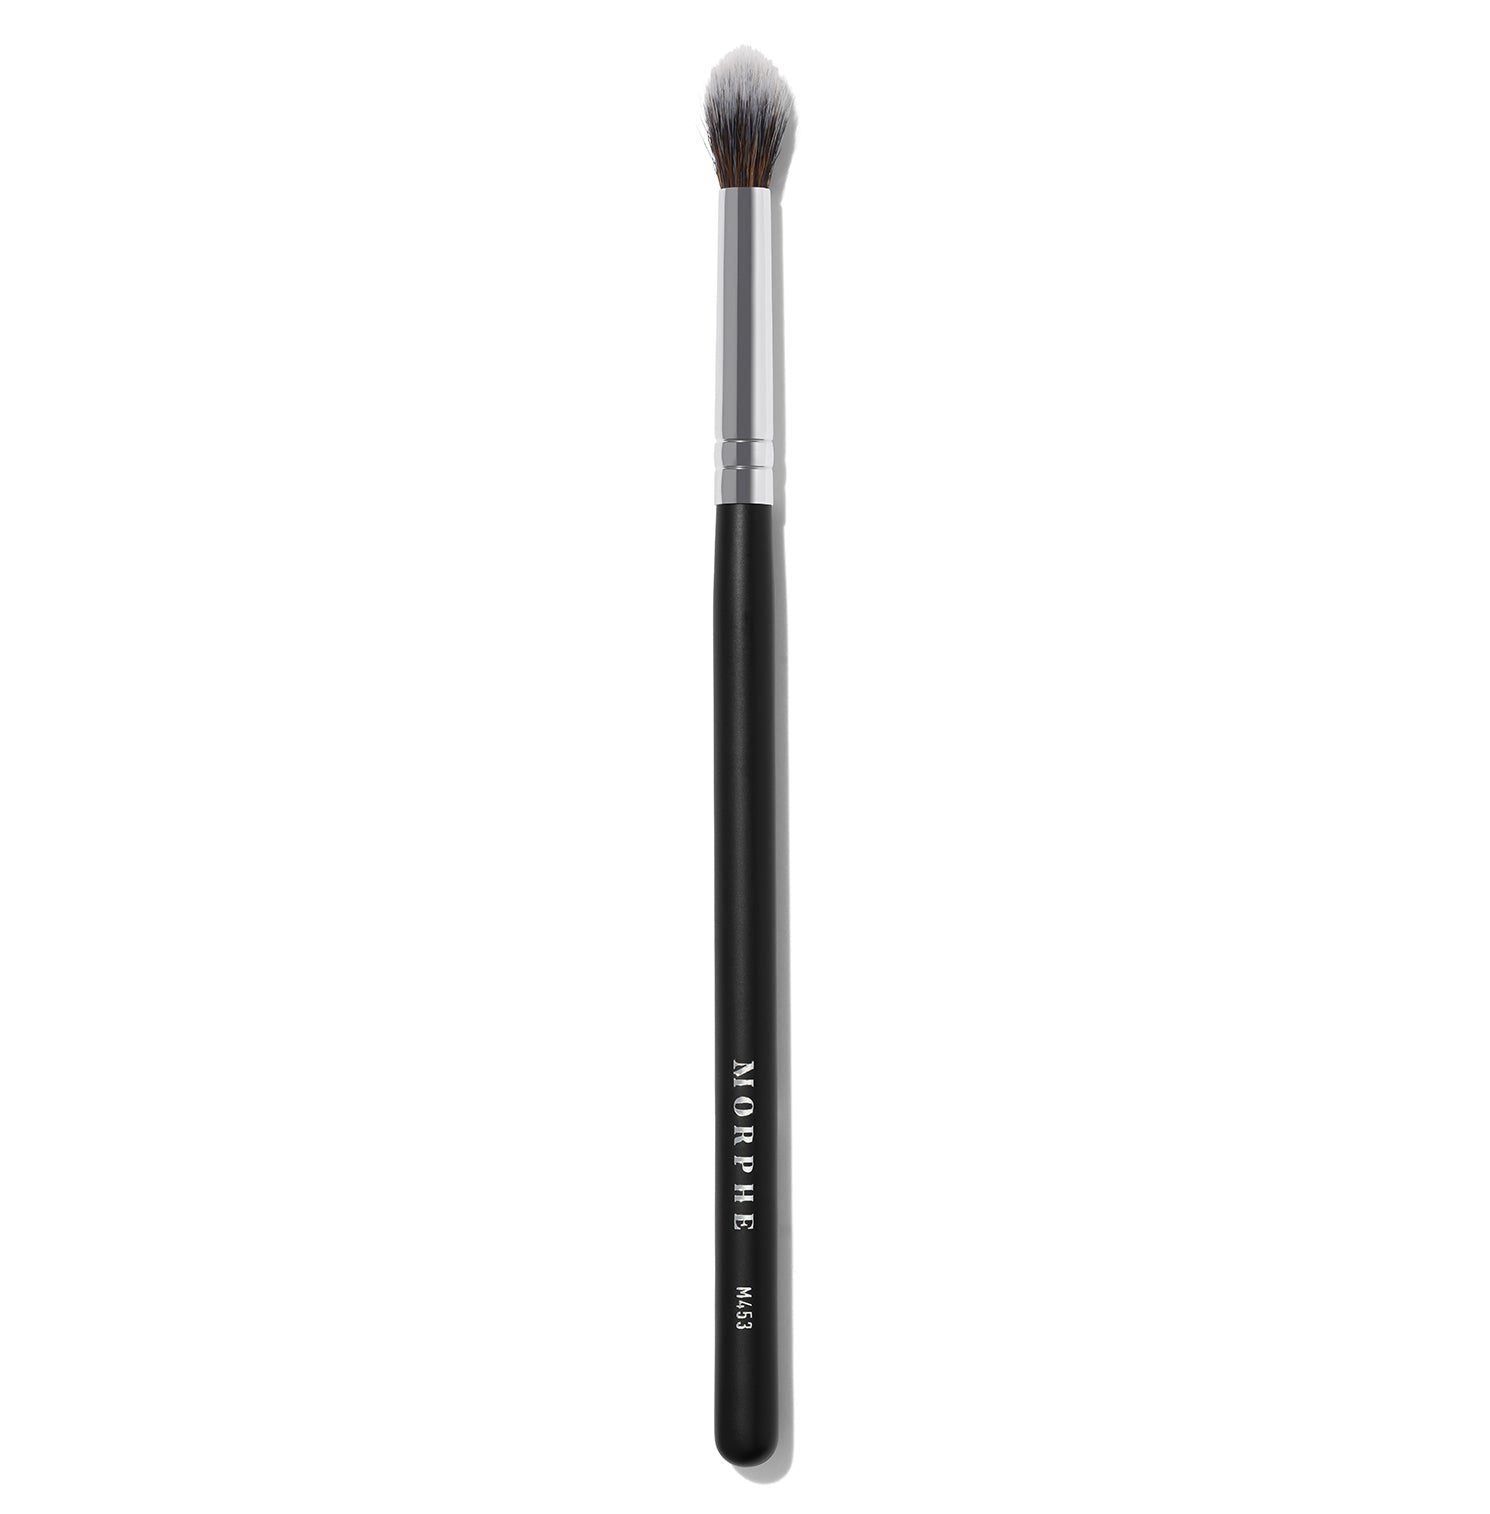 M453 Crease Blender Eyeshadow Brush - Image 1